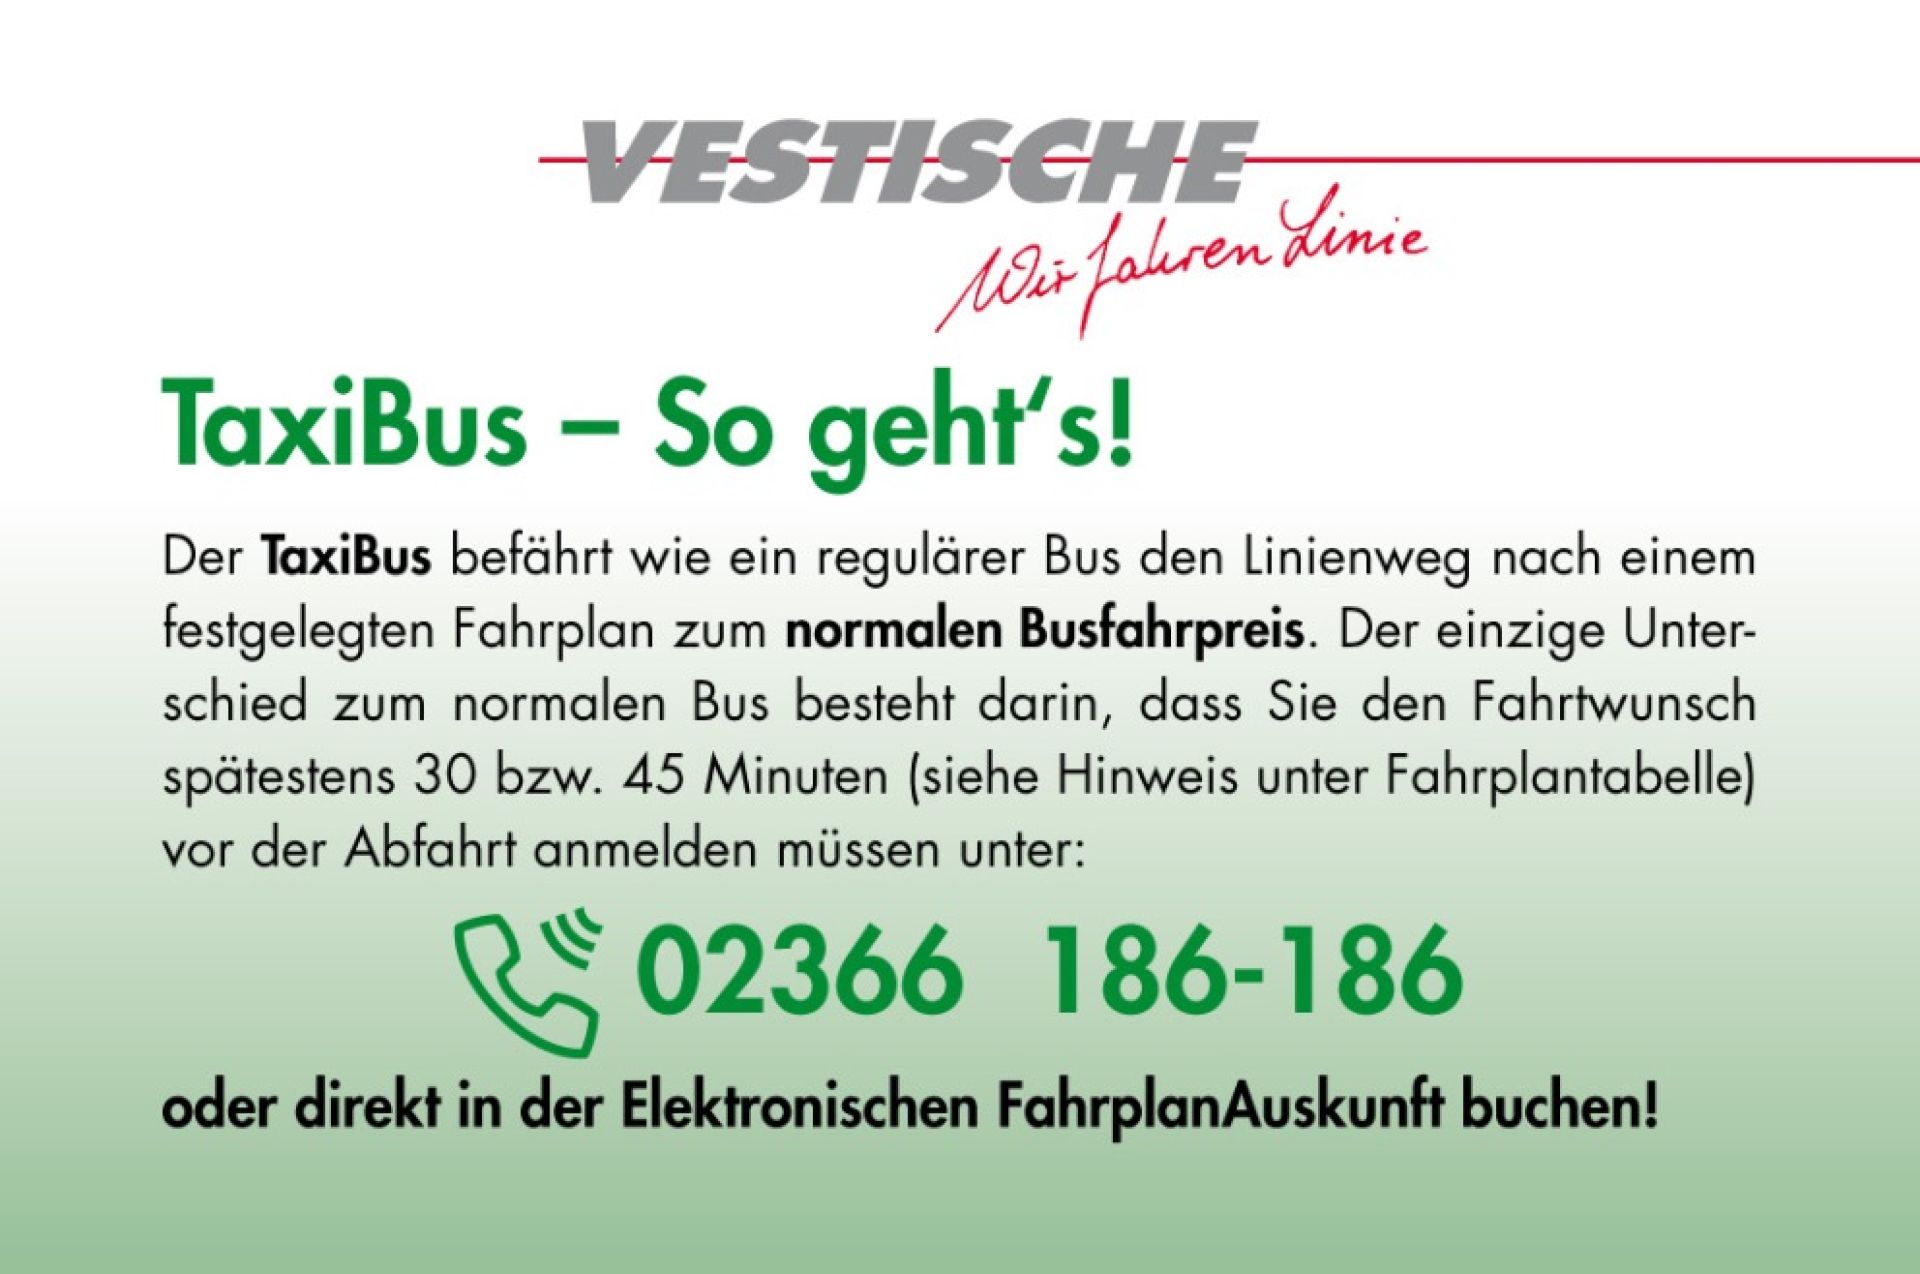 TaxiBus - So geht's! Der TaxiBus fährt den Linienweg nach einem Fahrplan zum normalen Busfahrpreis. Sie müssen nur 30 bzw 45 Minuten vor der Abfahrt dieses anmelden unter: 02366 186-186